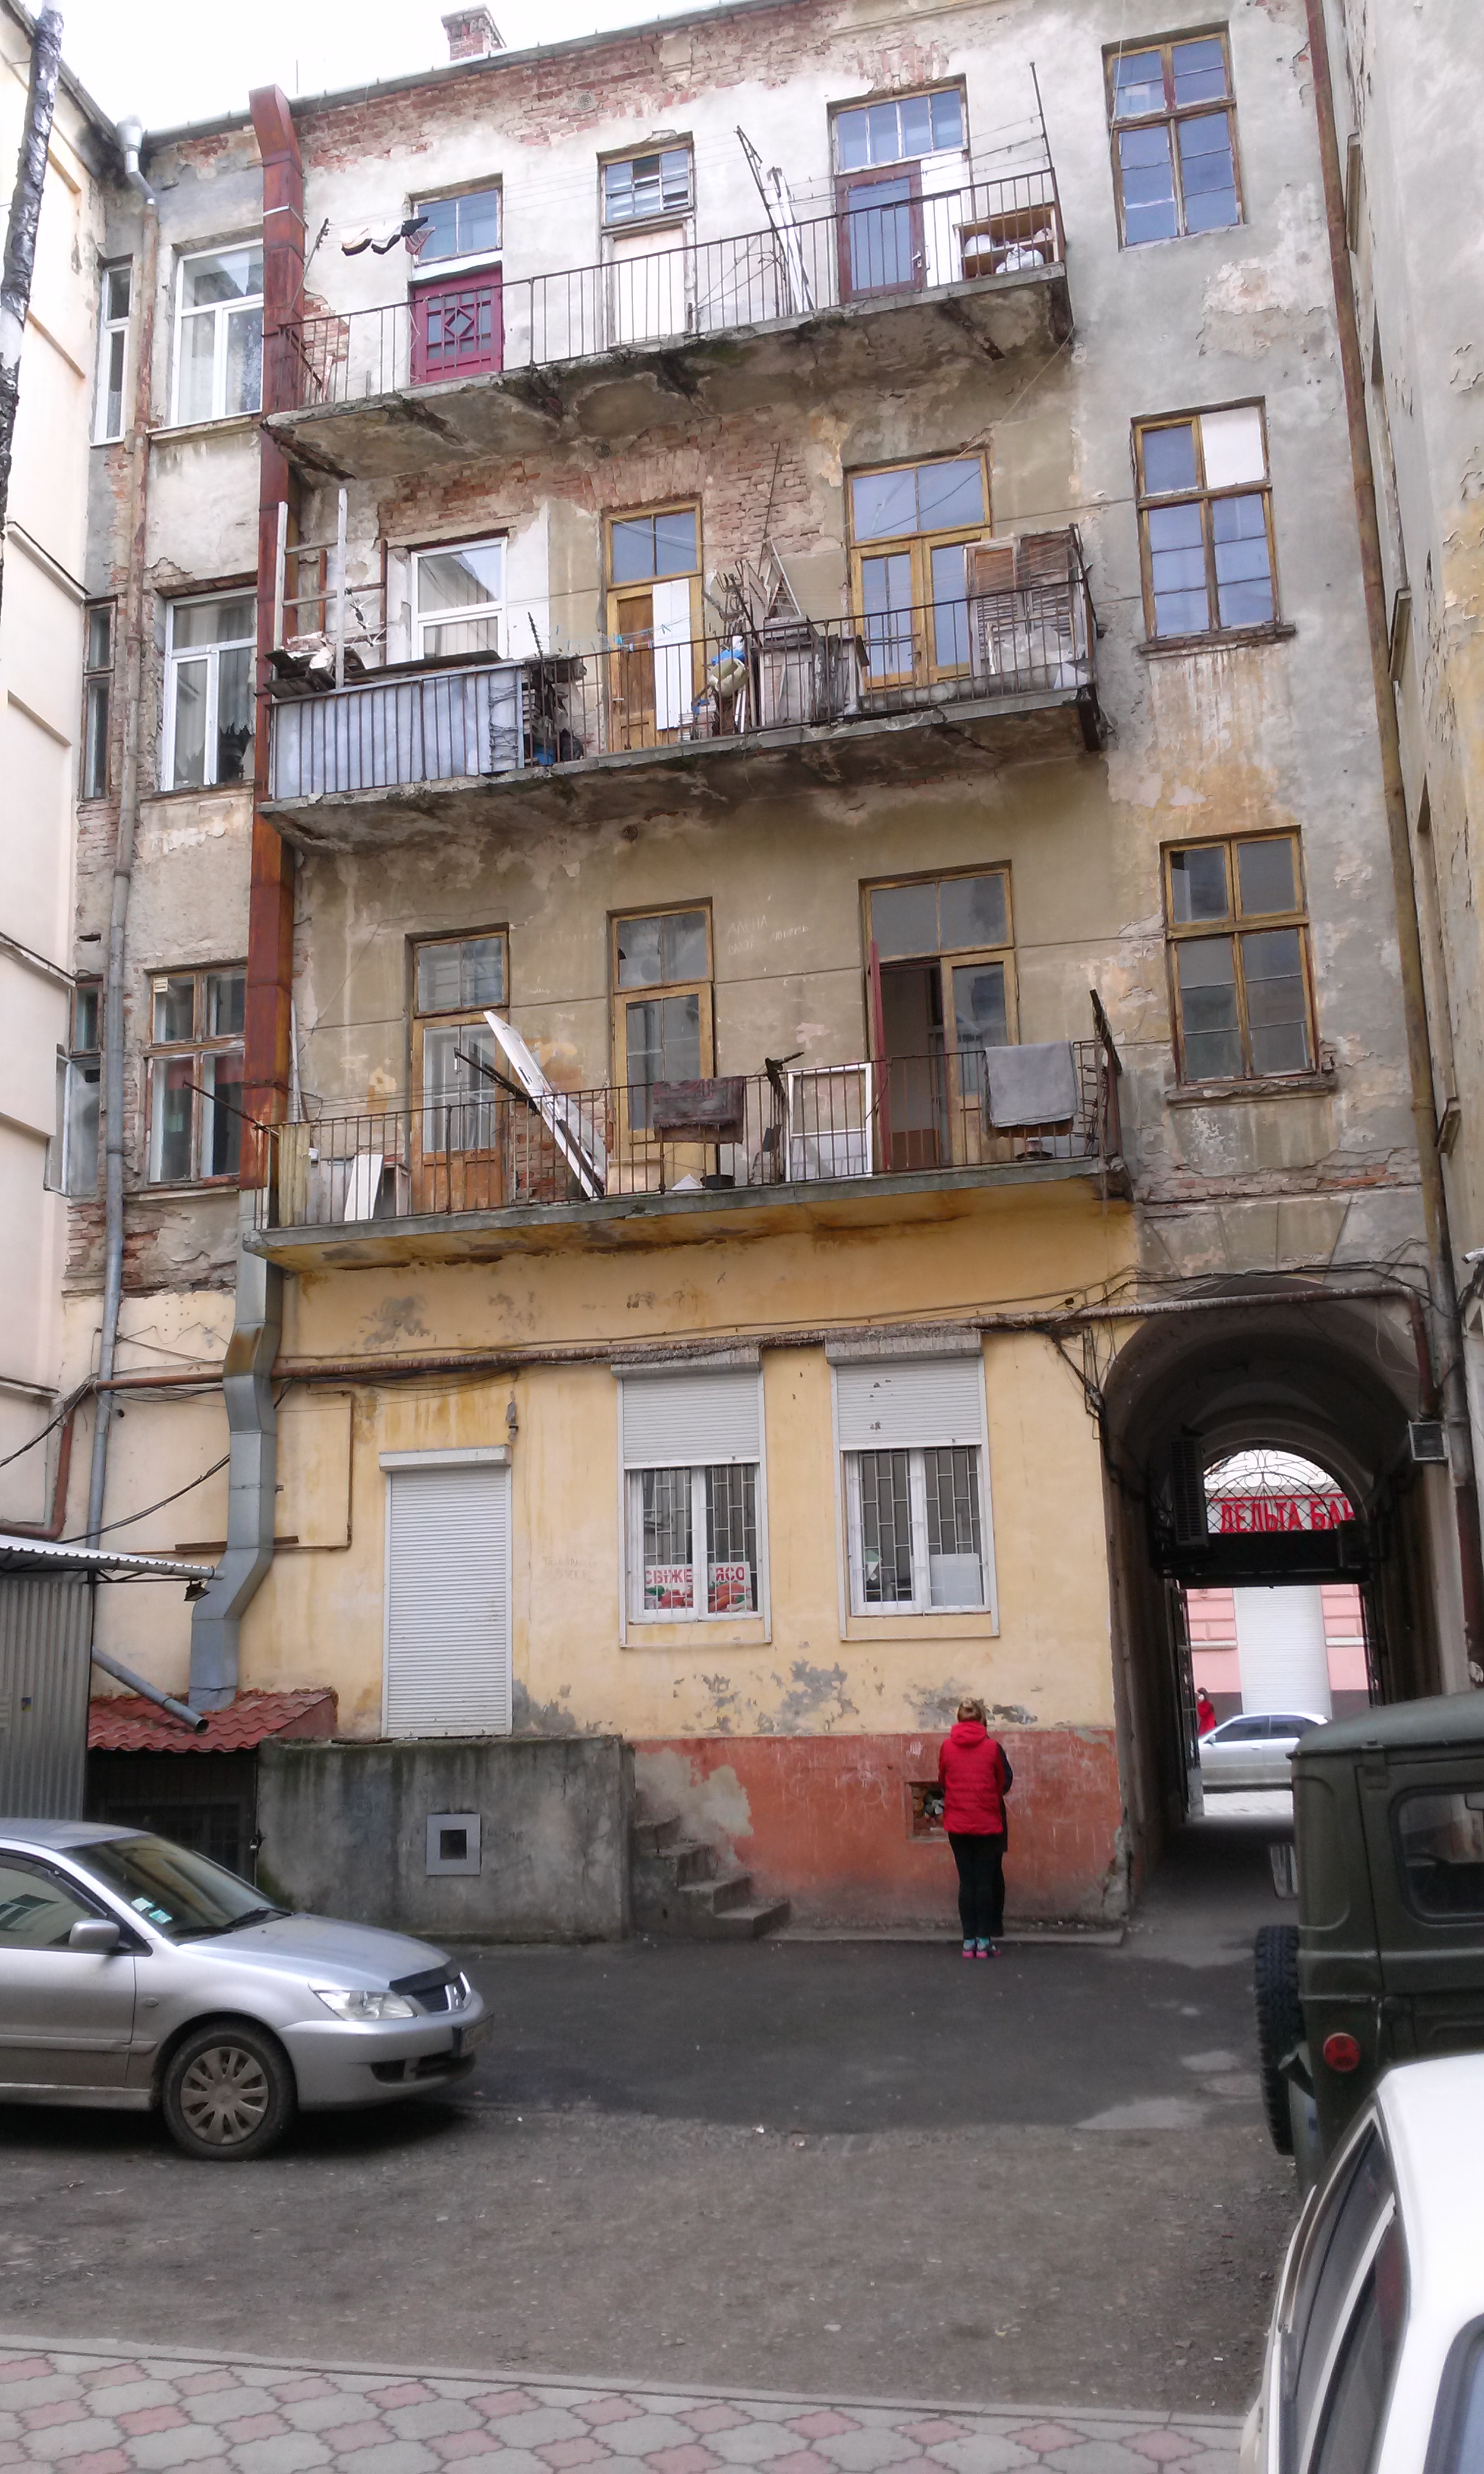 Так виглядає дім по вул. Заньковецької, 15, з боку площі Філармонії та з внутрішнього двору. Фото надане автором